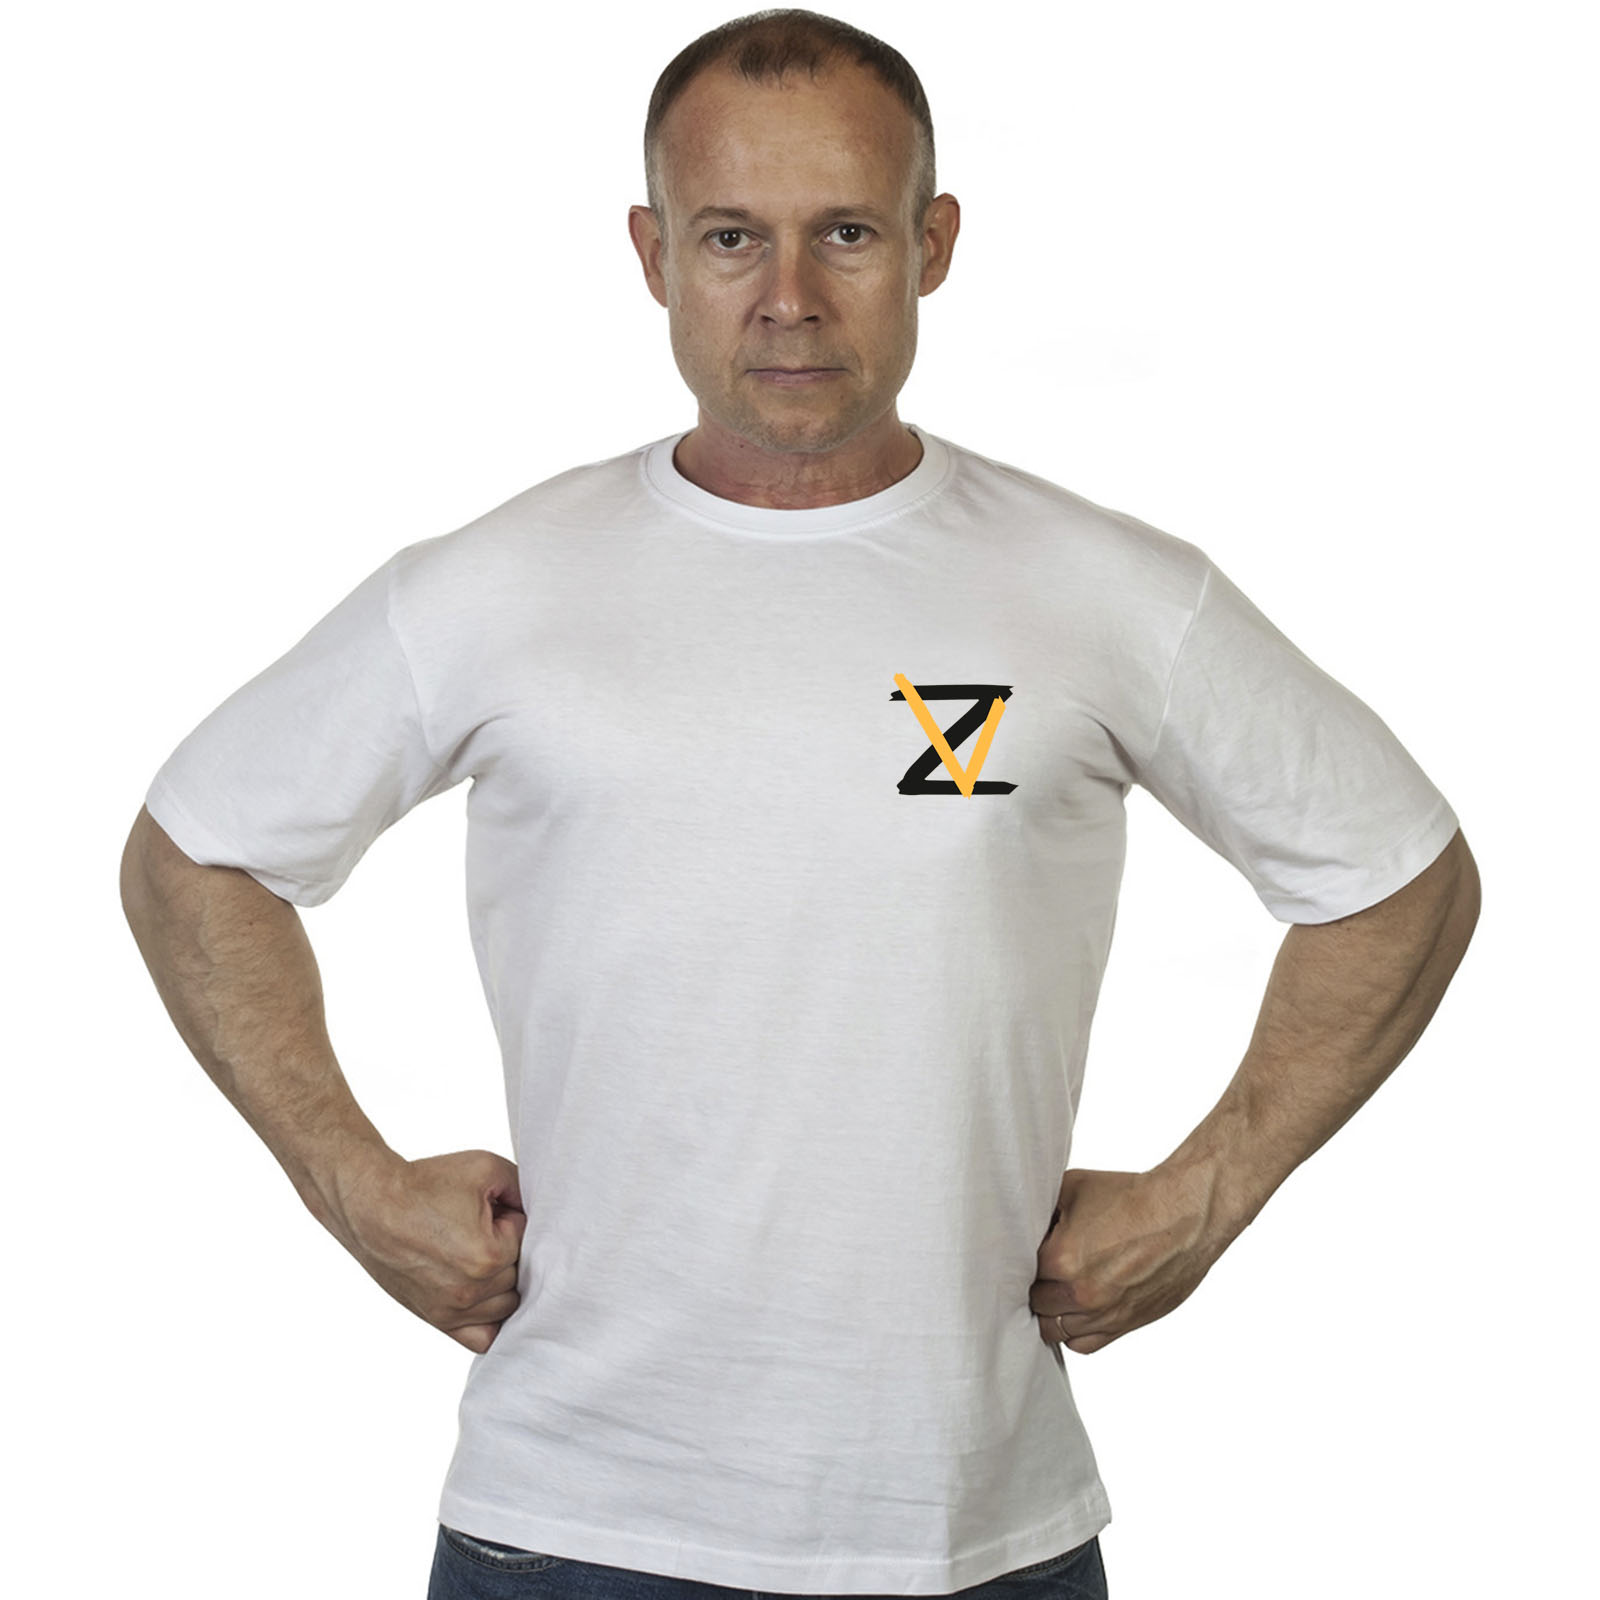 Купить в интернет магазине недорогую мужскую футболку с символикой Z V